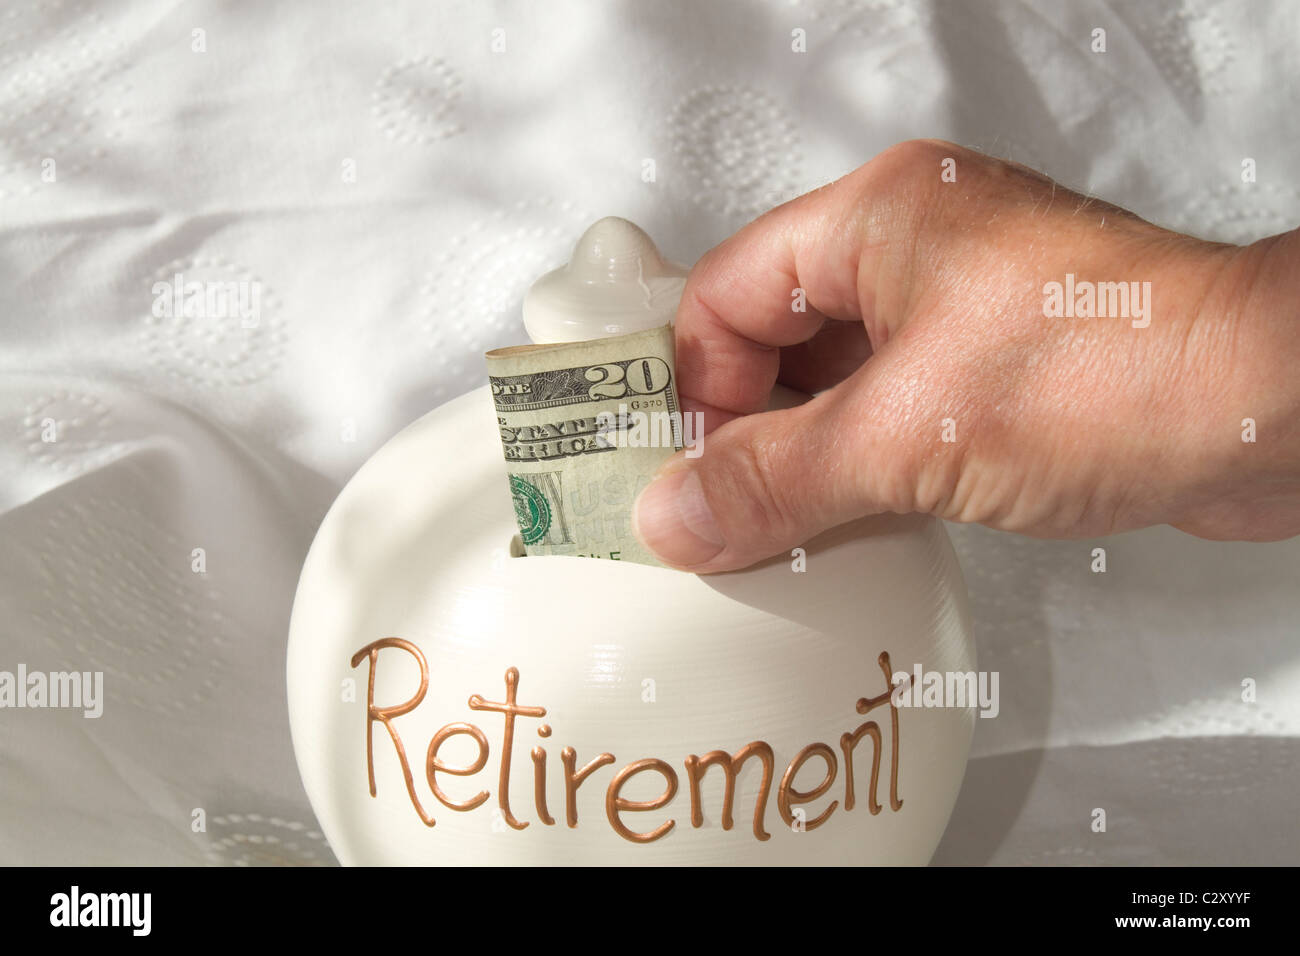 Un uomo collocando un american 20 dollar nota in un 'retirement risparmi dei contenitore. l'immagine è illuminata dalla luce della finestra Foto Stock